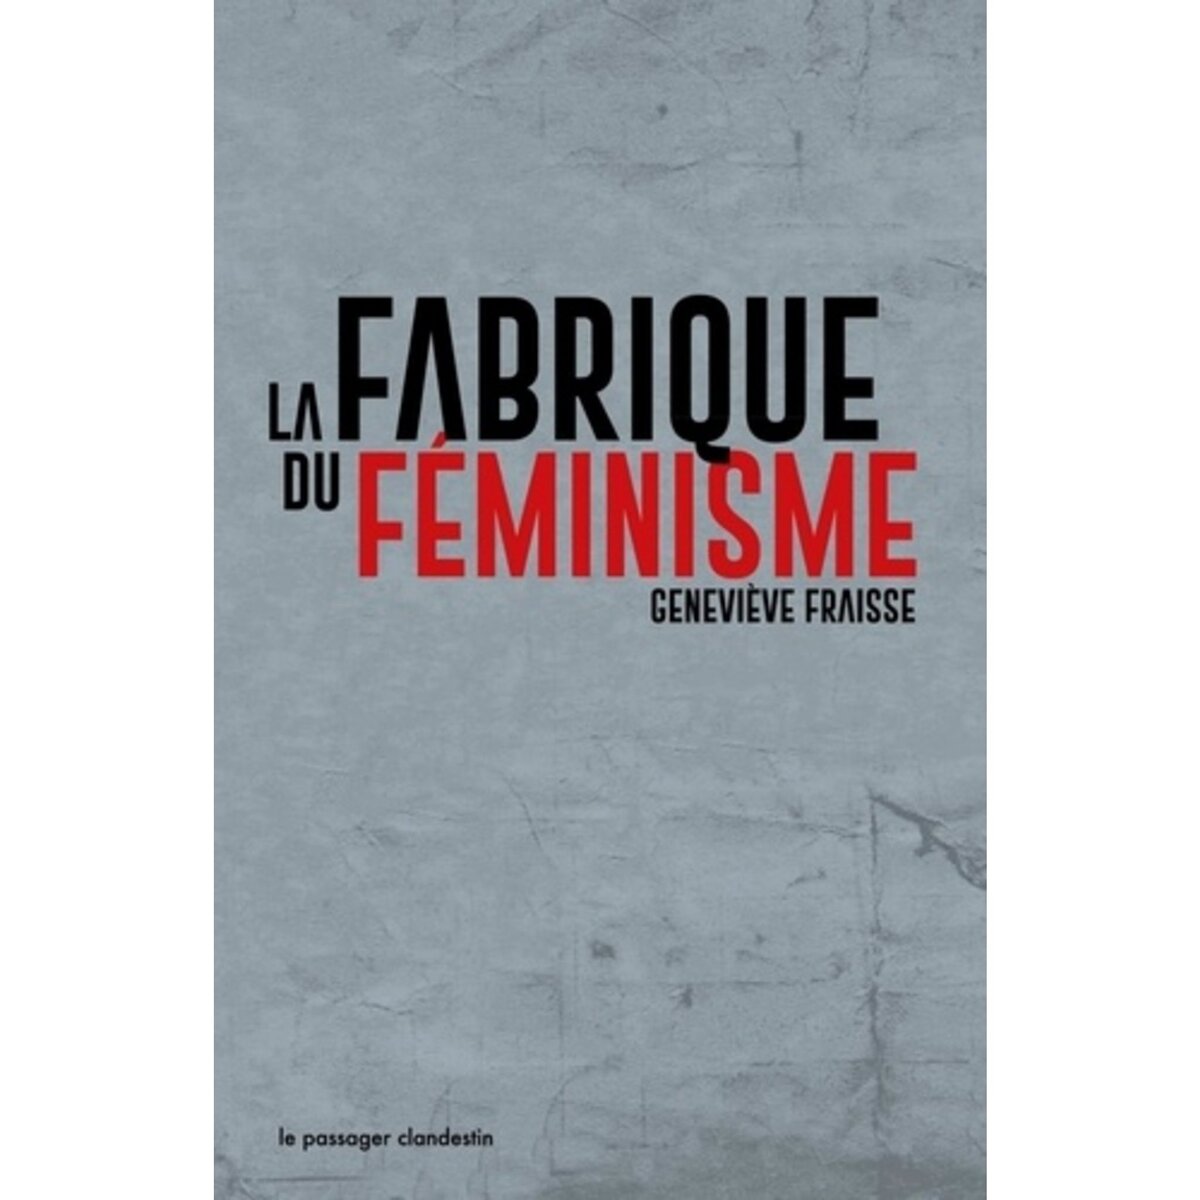  LA FABRIQUE DU FEMINISME. EDITION REVUE ET AUGMENTEE, Fraisse Geneviève